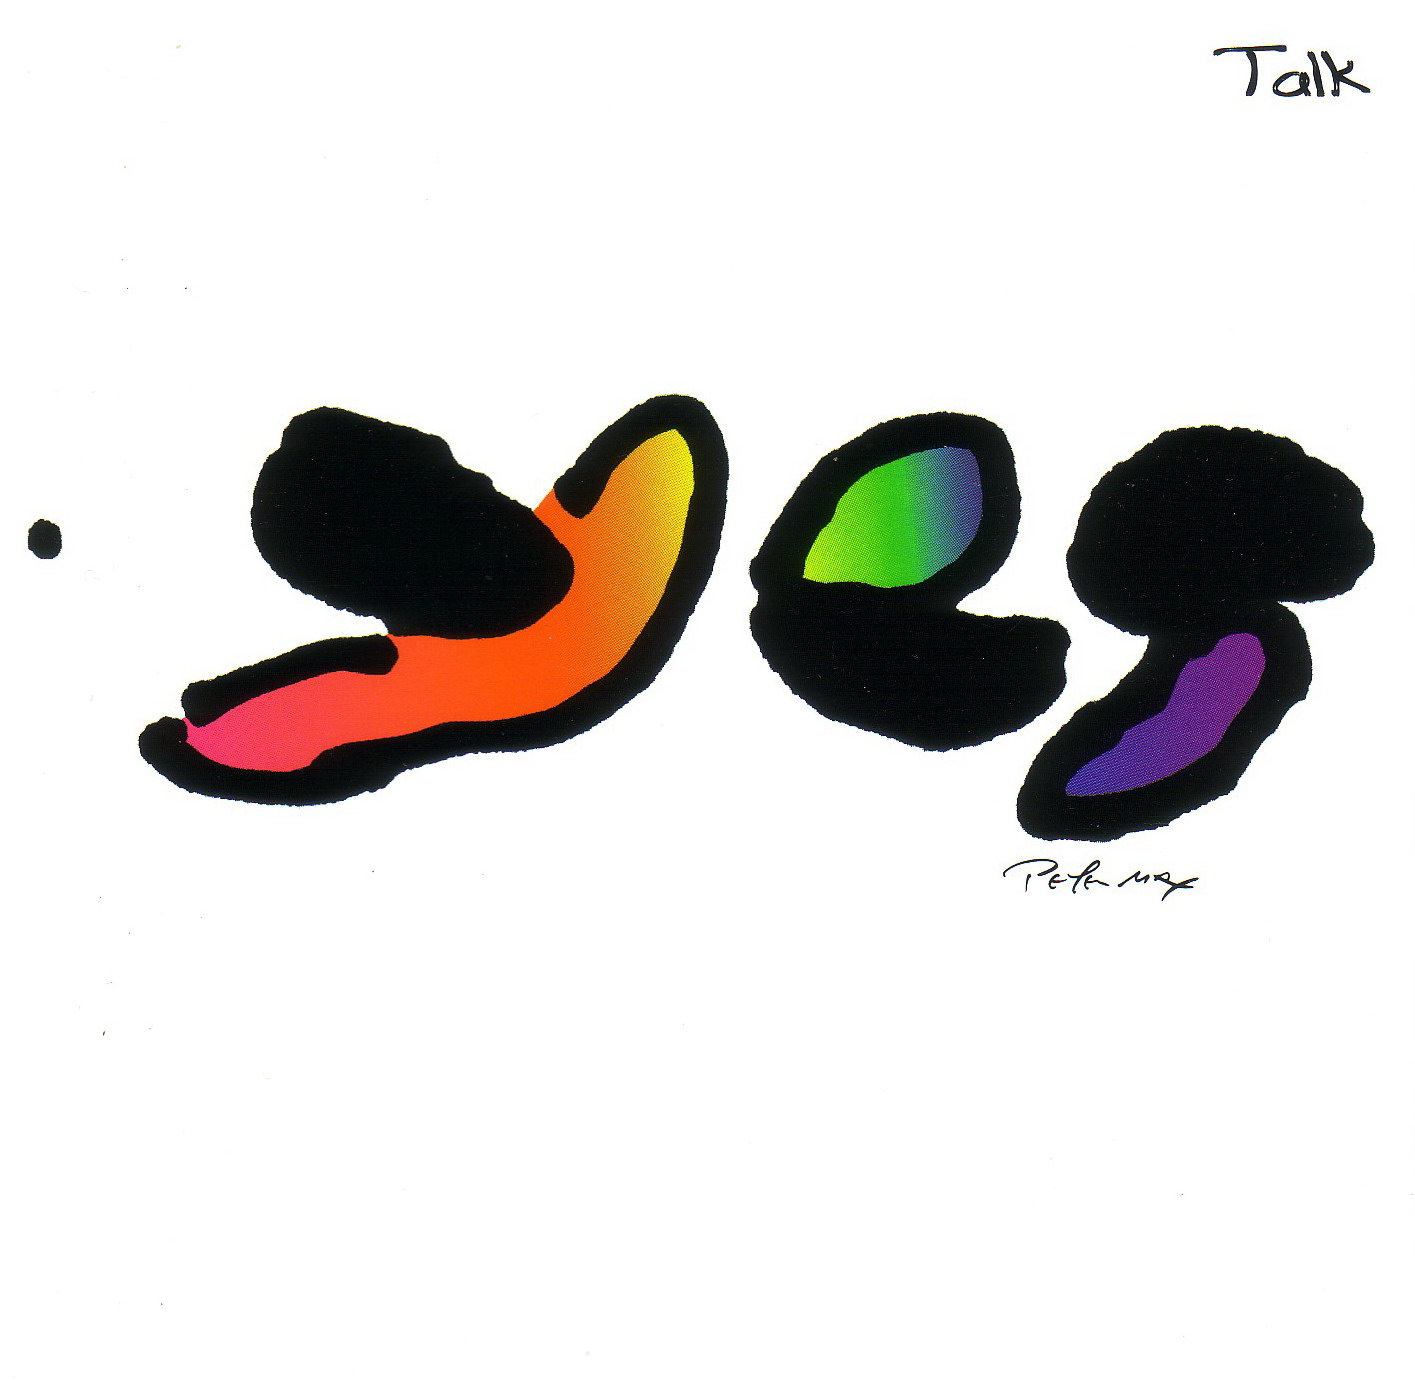 Talk (1994)